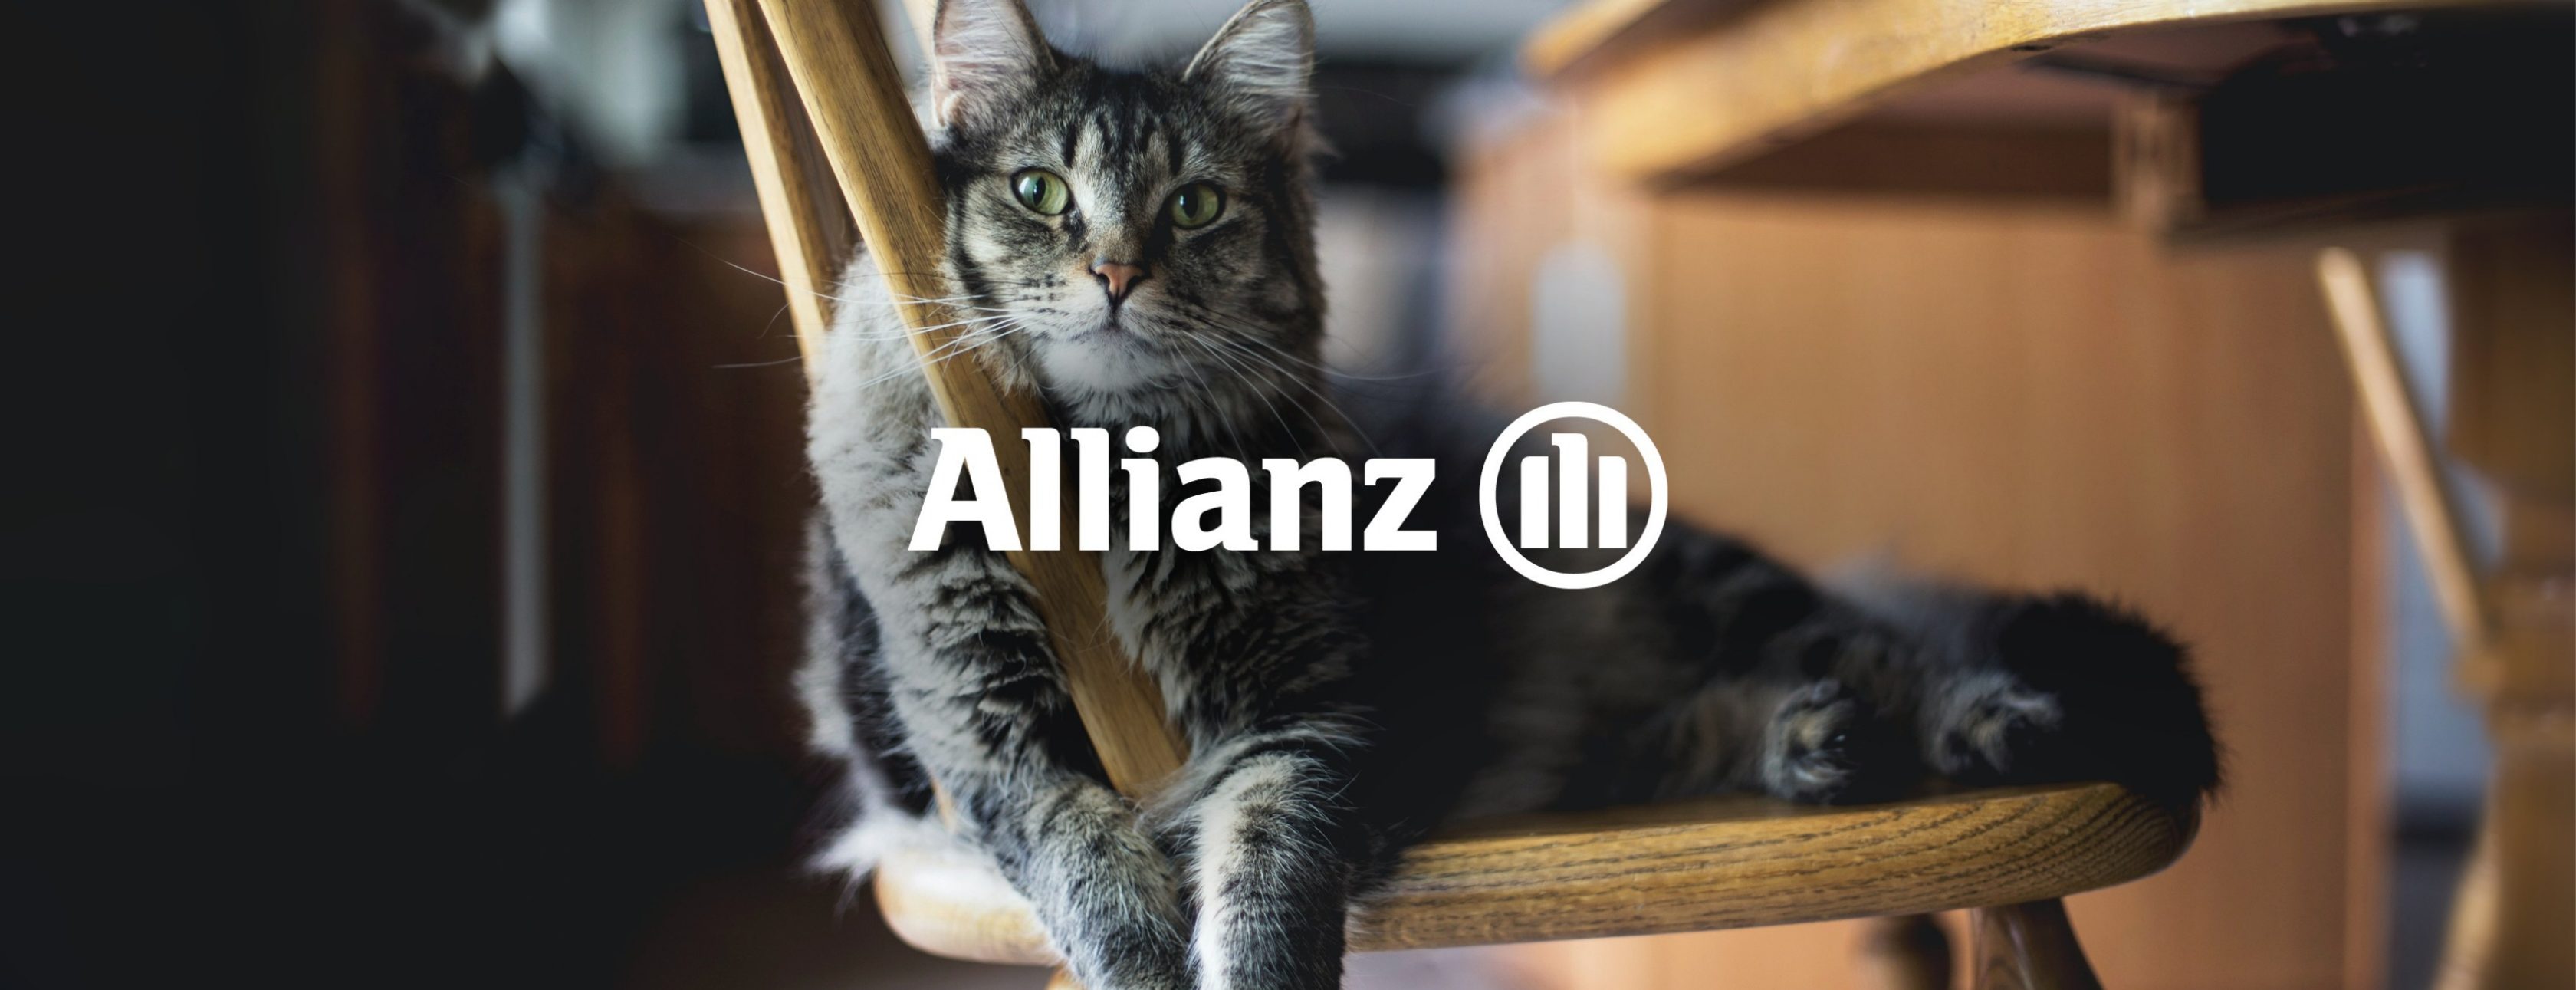 Allianz Versicherung Wolfgang Altmannsberger Eggenfelden - Katze Allianz